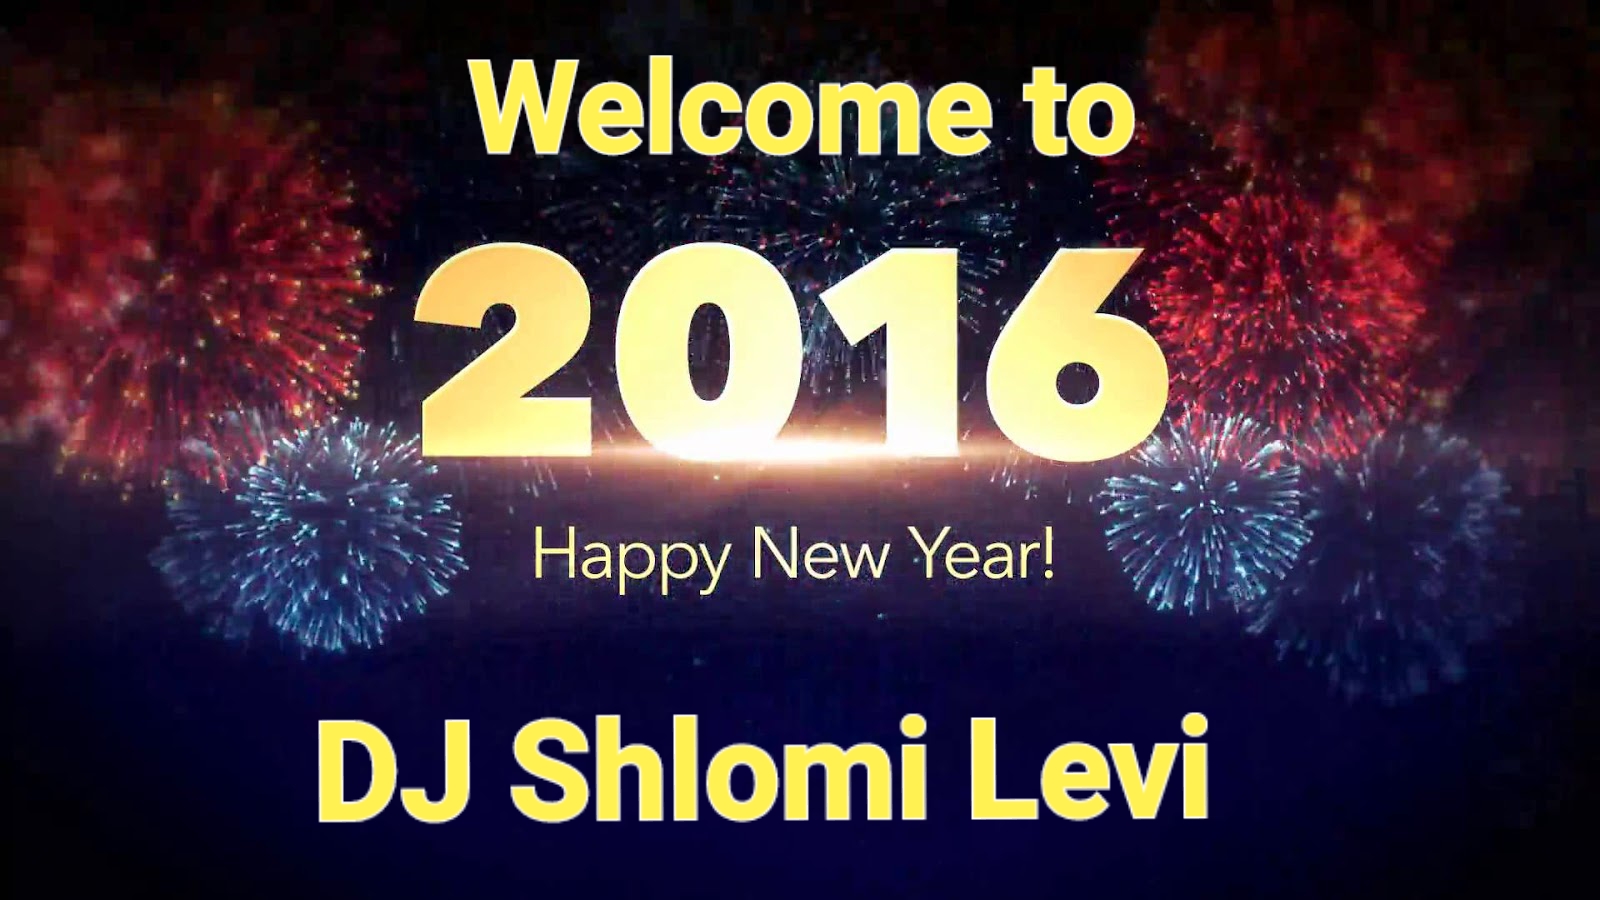  אוסף המשאפים Shlomi levi - Welcome to 2016